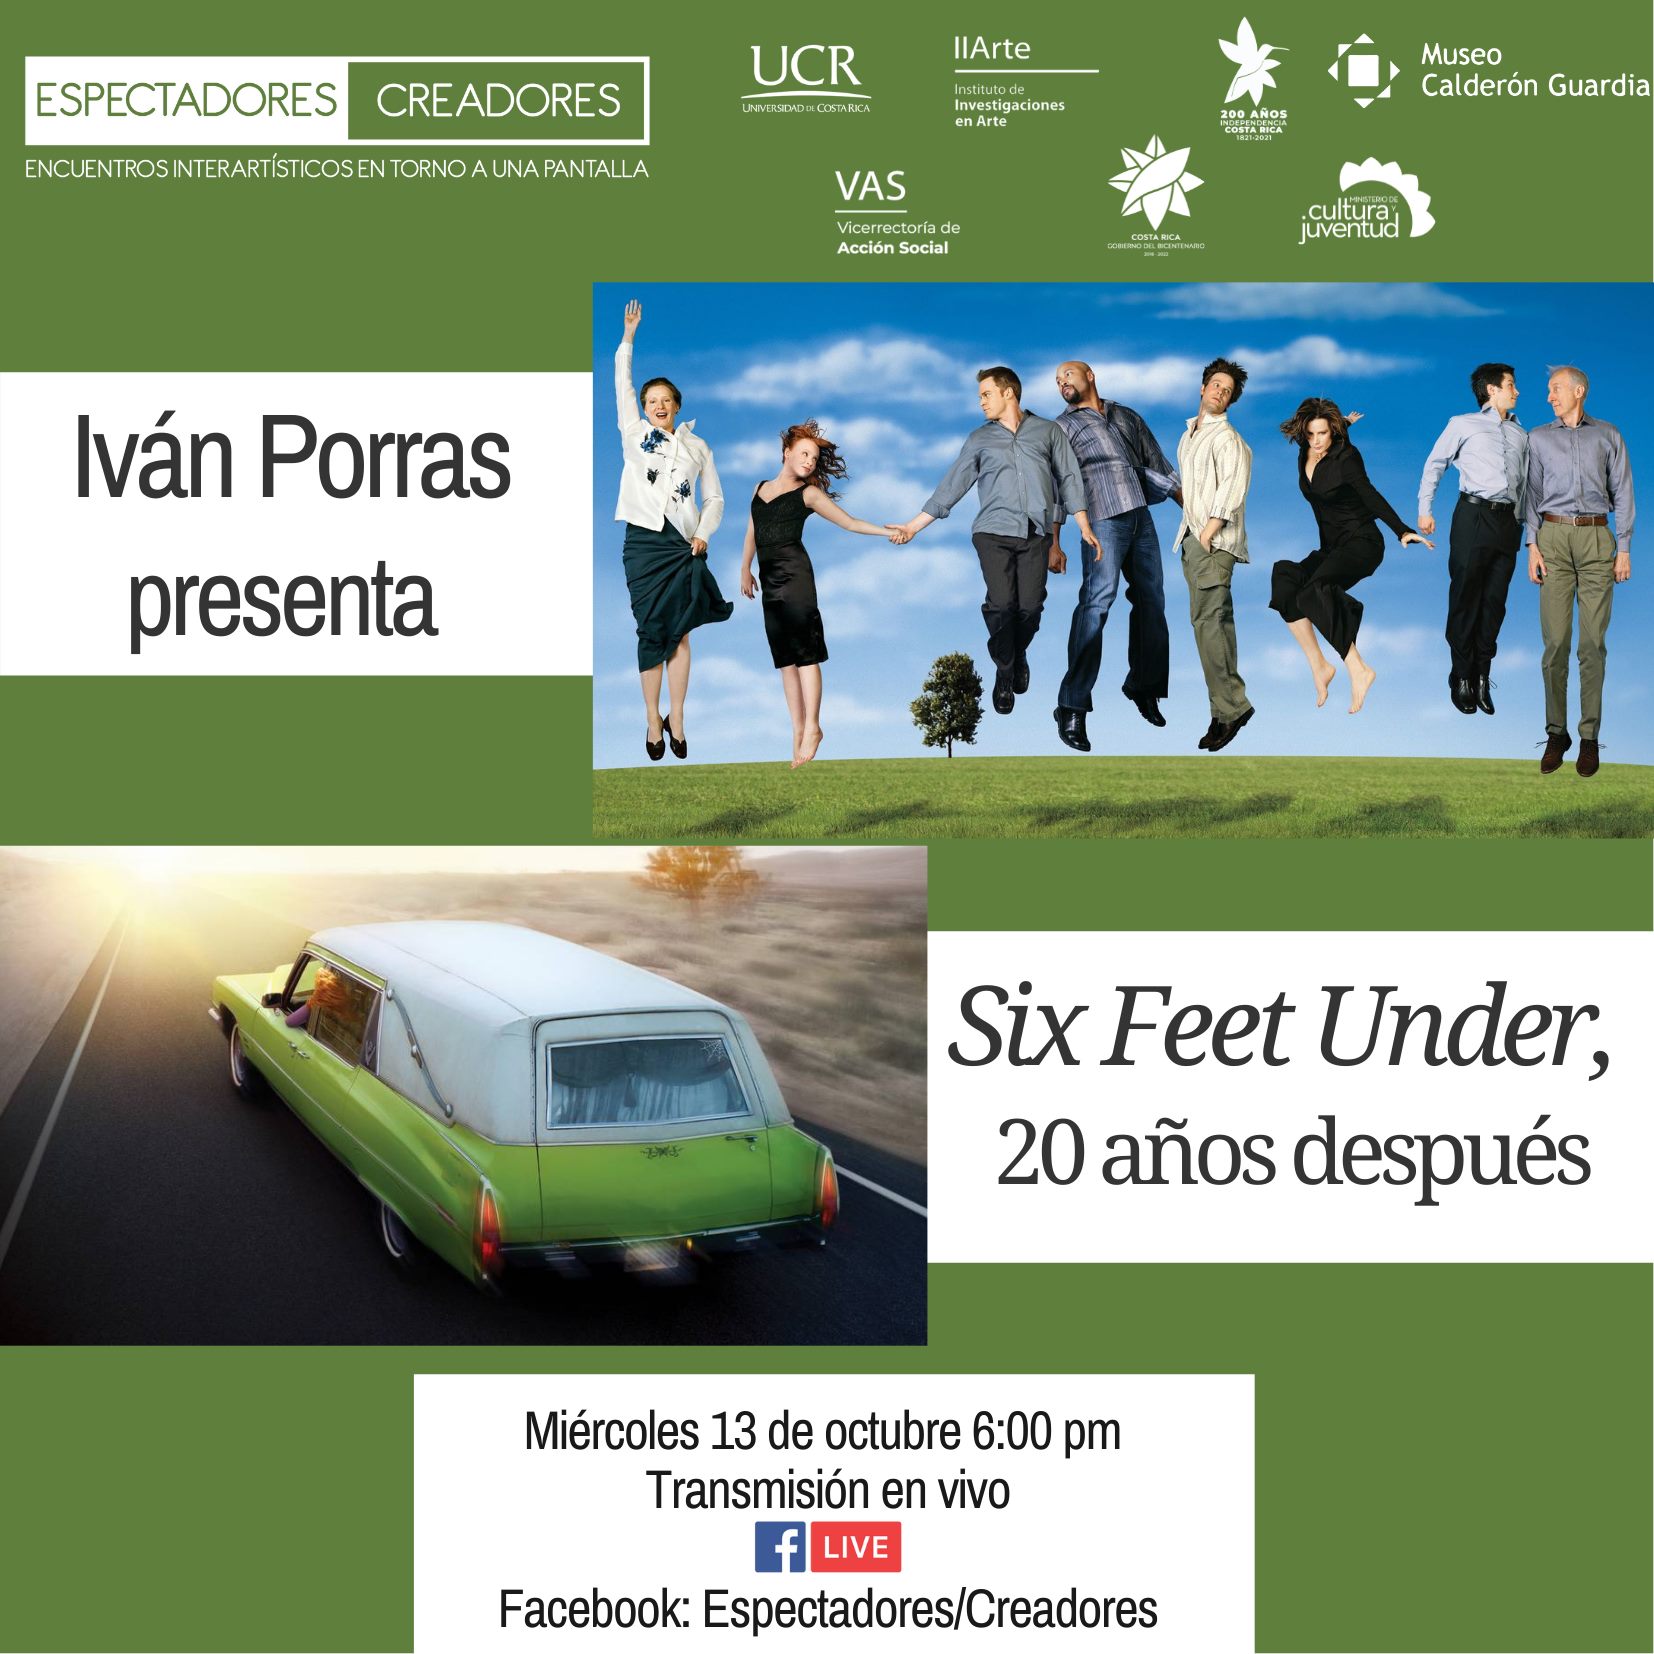 Iván Porras presenta Six Feet Under, 20 años después